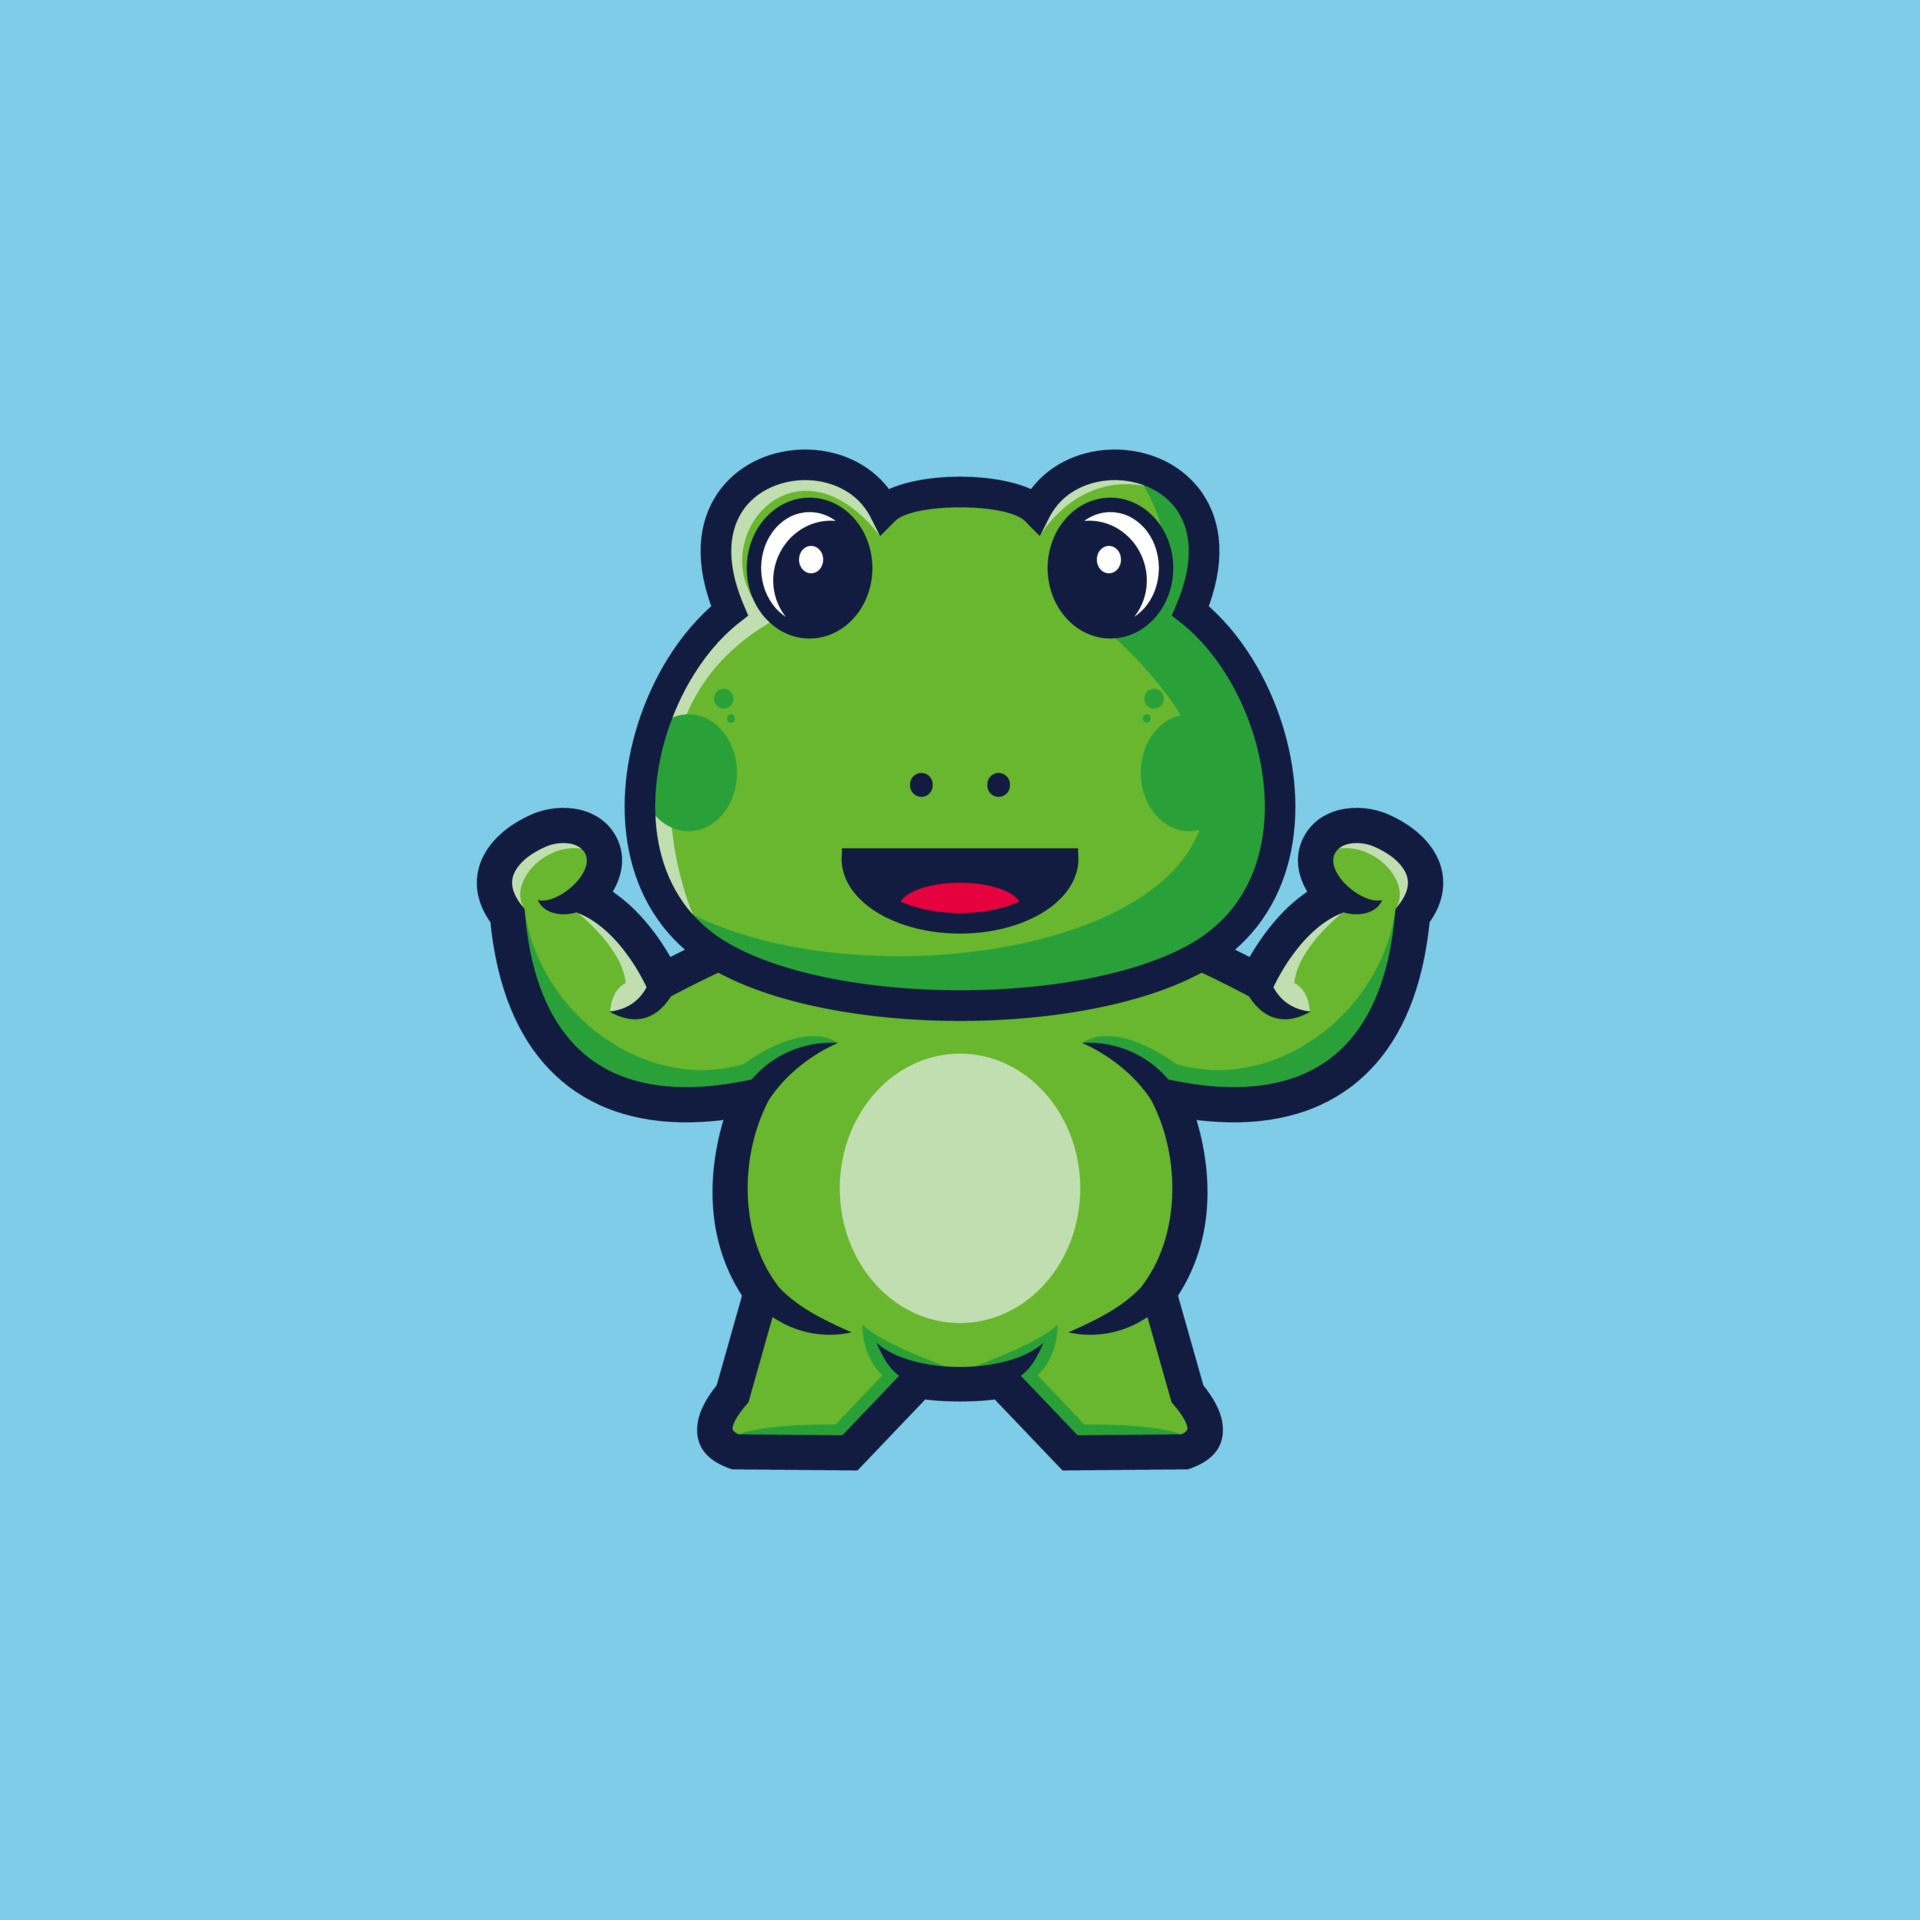 Cute frog cartoon character premium vector 8668539 Vector Art at Vecteezy